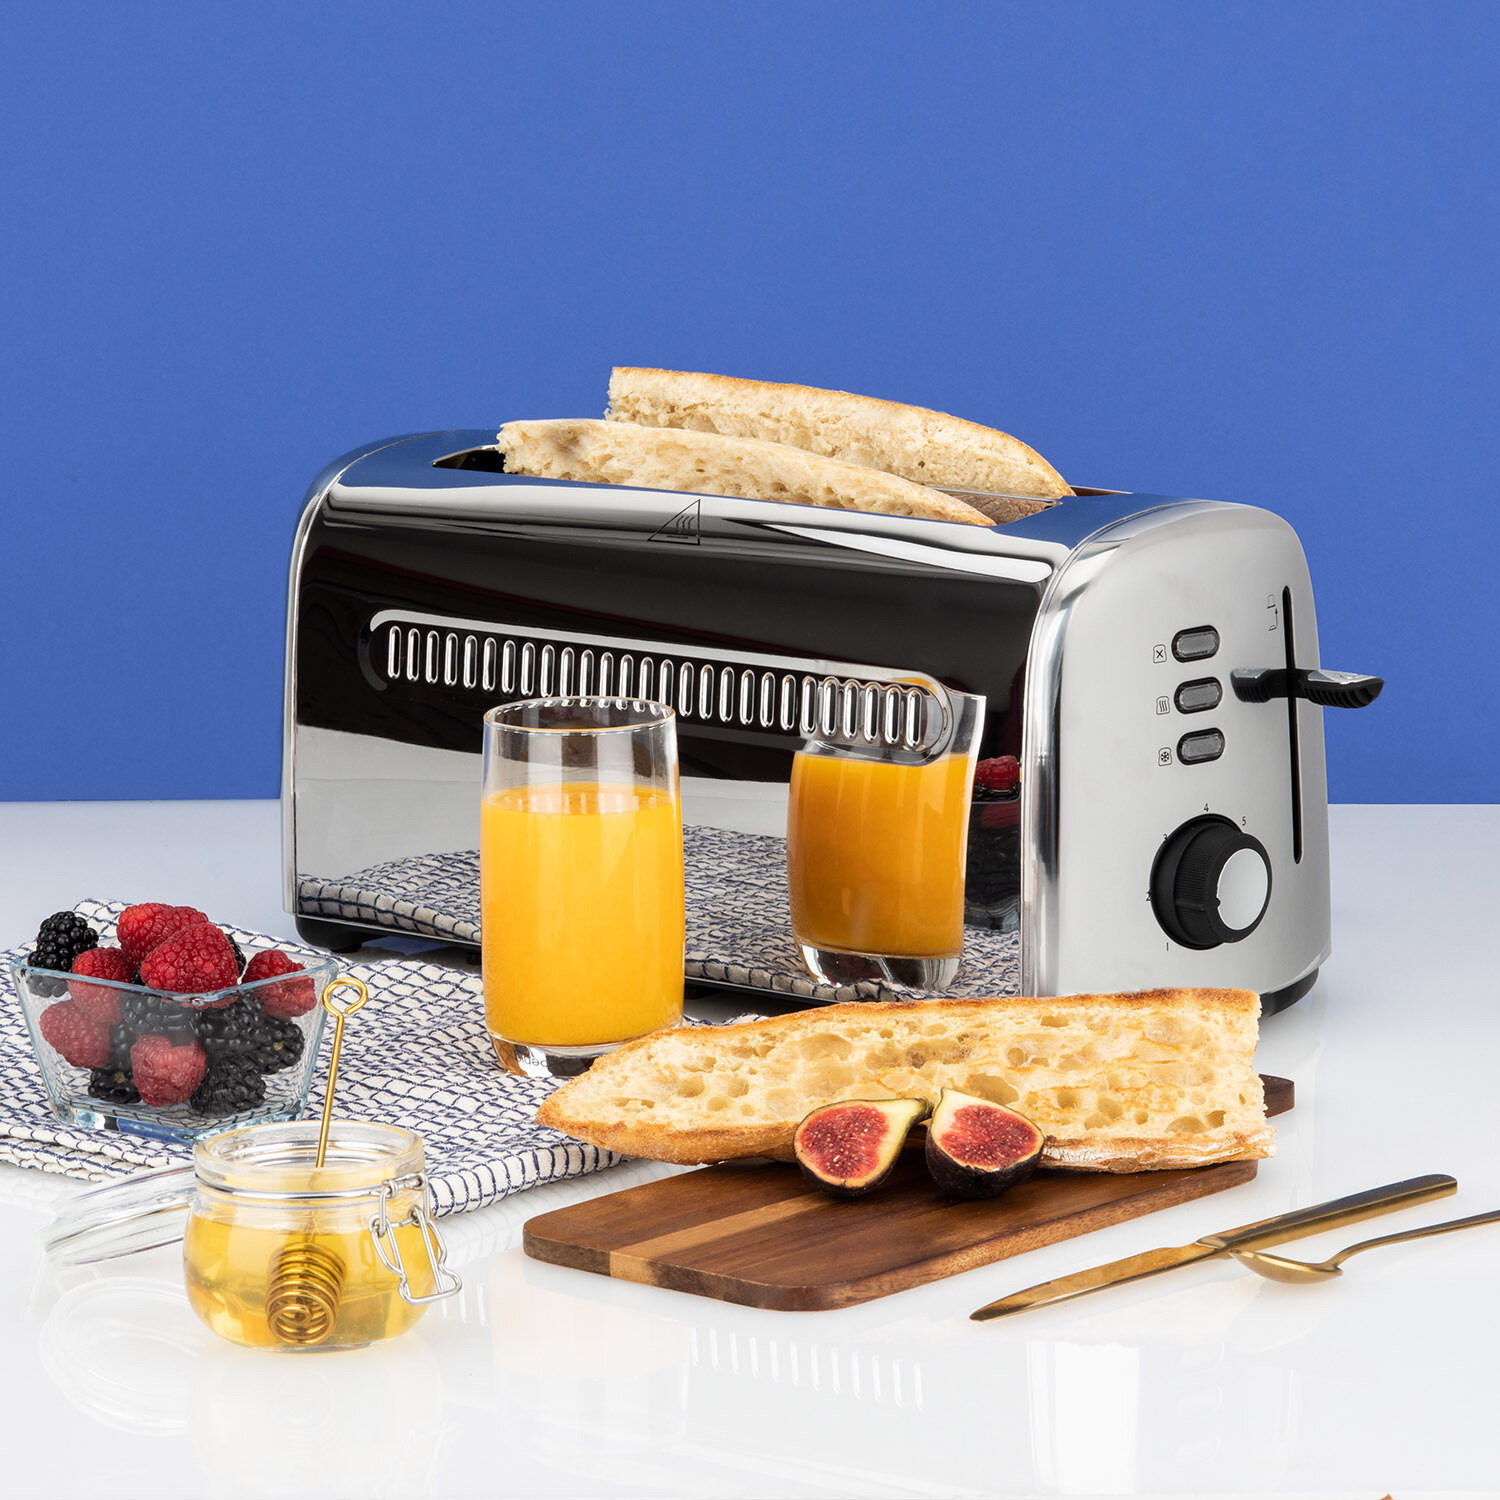 Nuestros productos > Desayuno > tostadora 2 ranurasespecial baguettes :  Koenig - ES